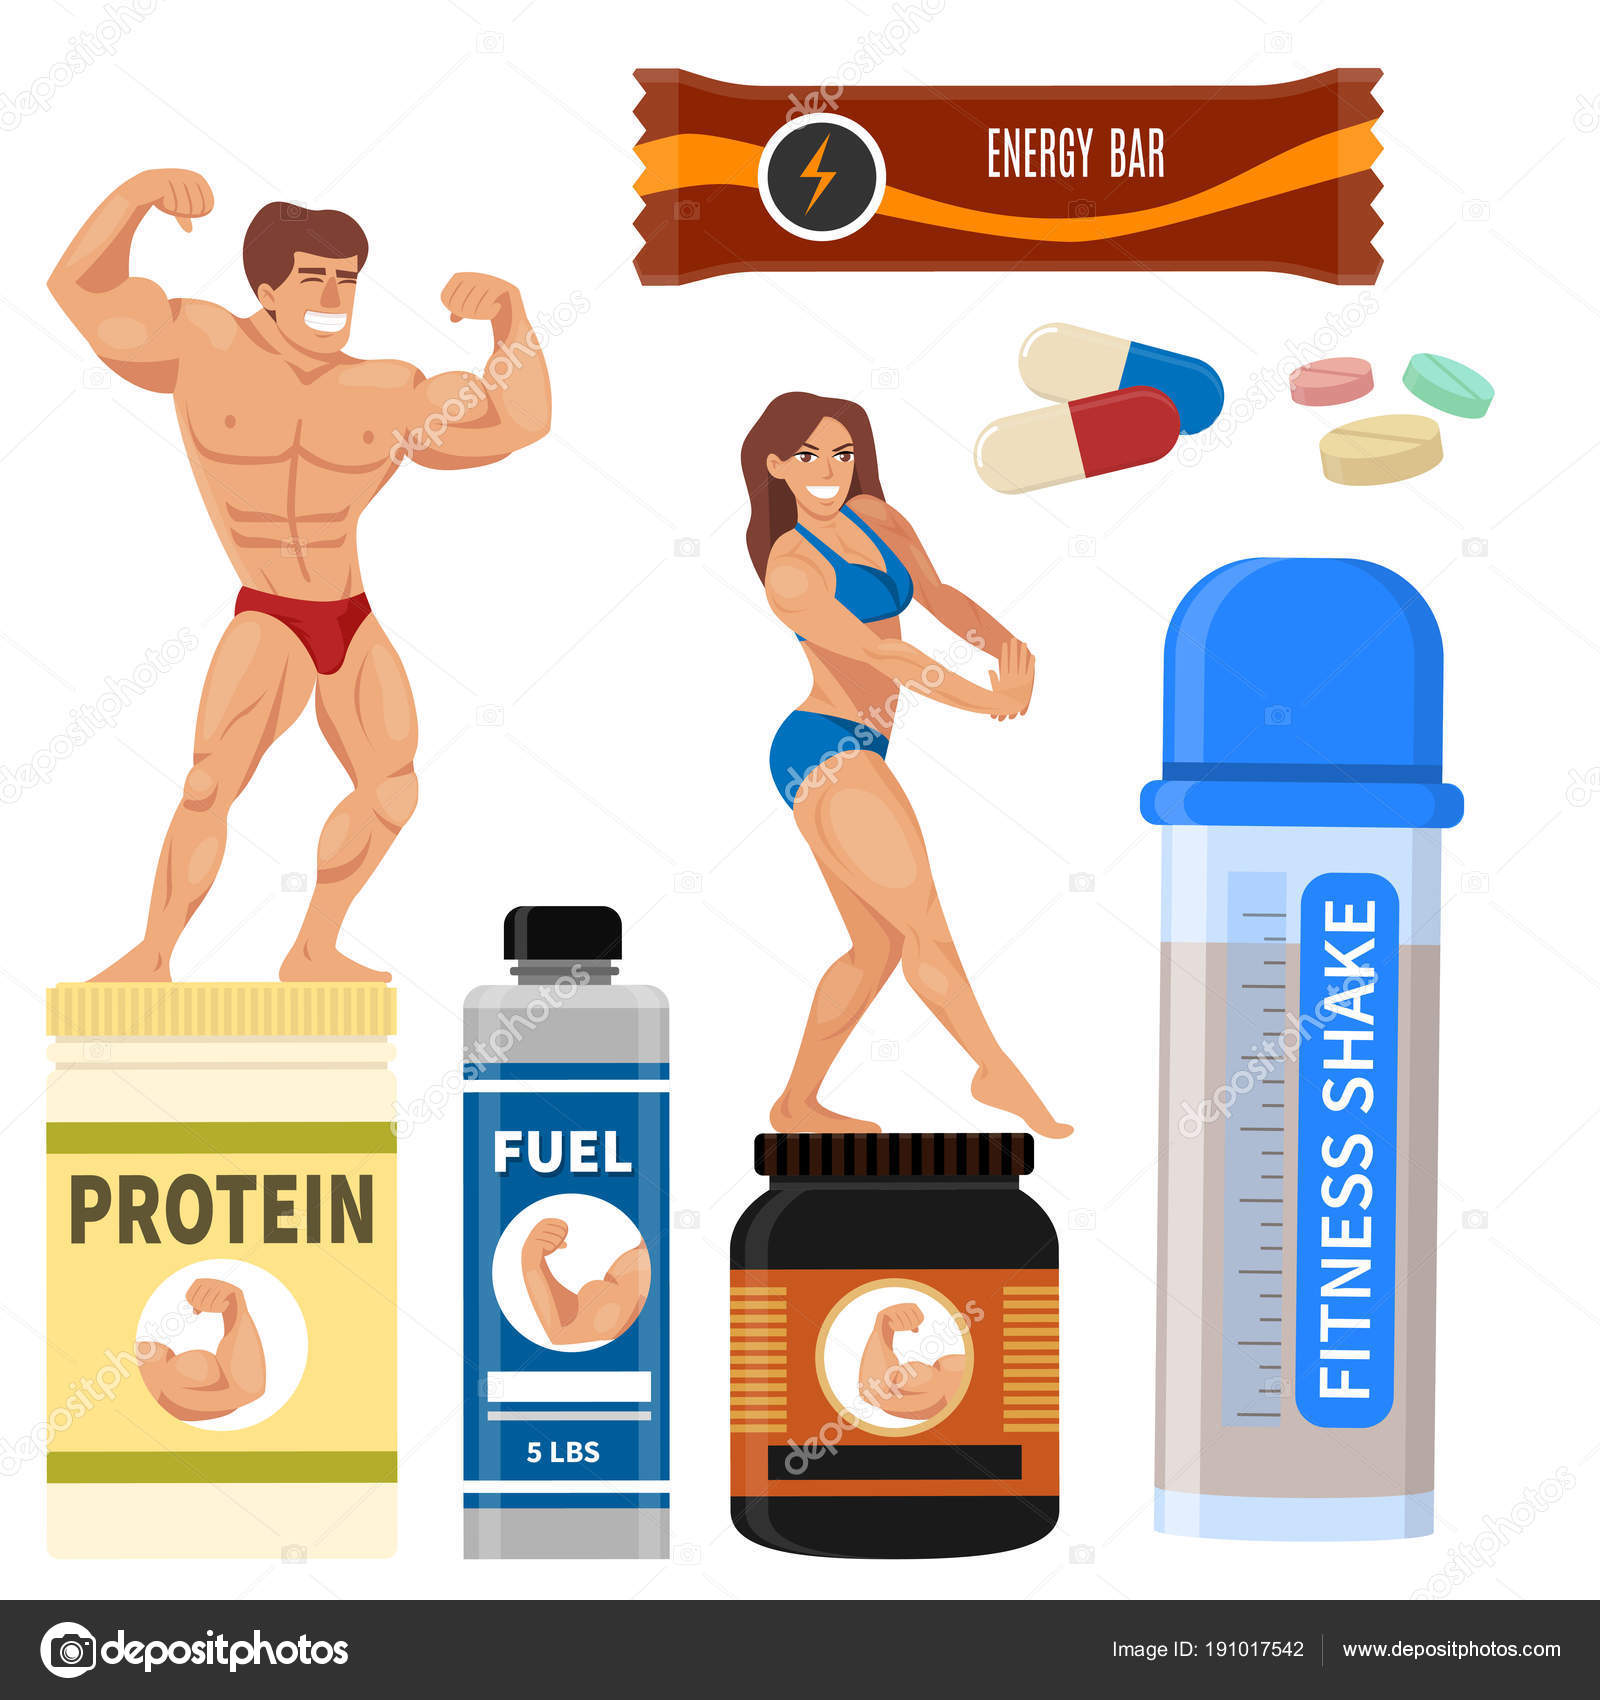 Bodybuild, bodybuilder, protein, shake, shaker, supplements